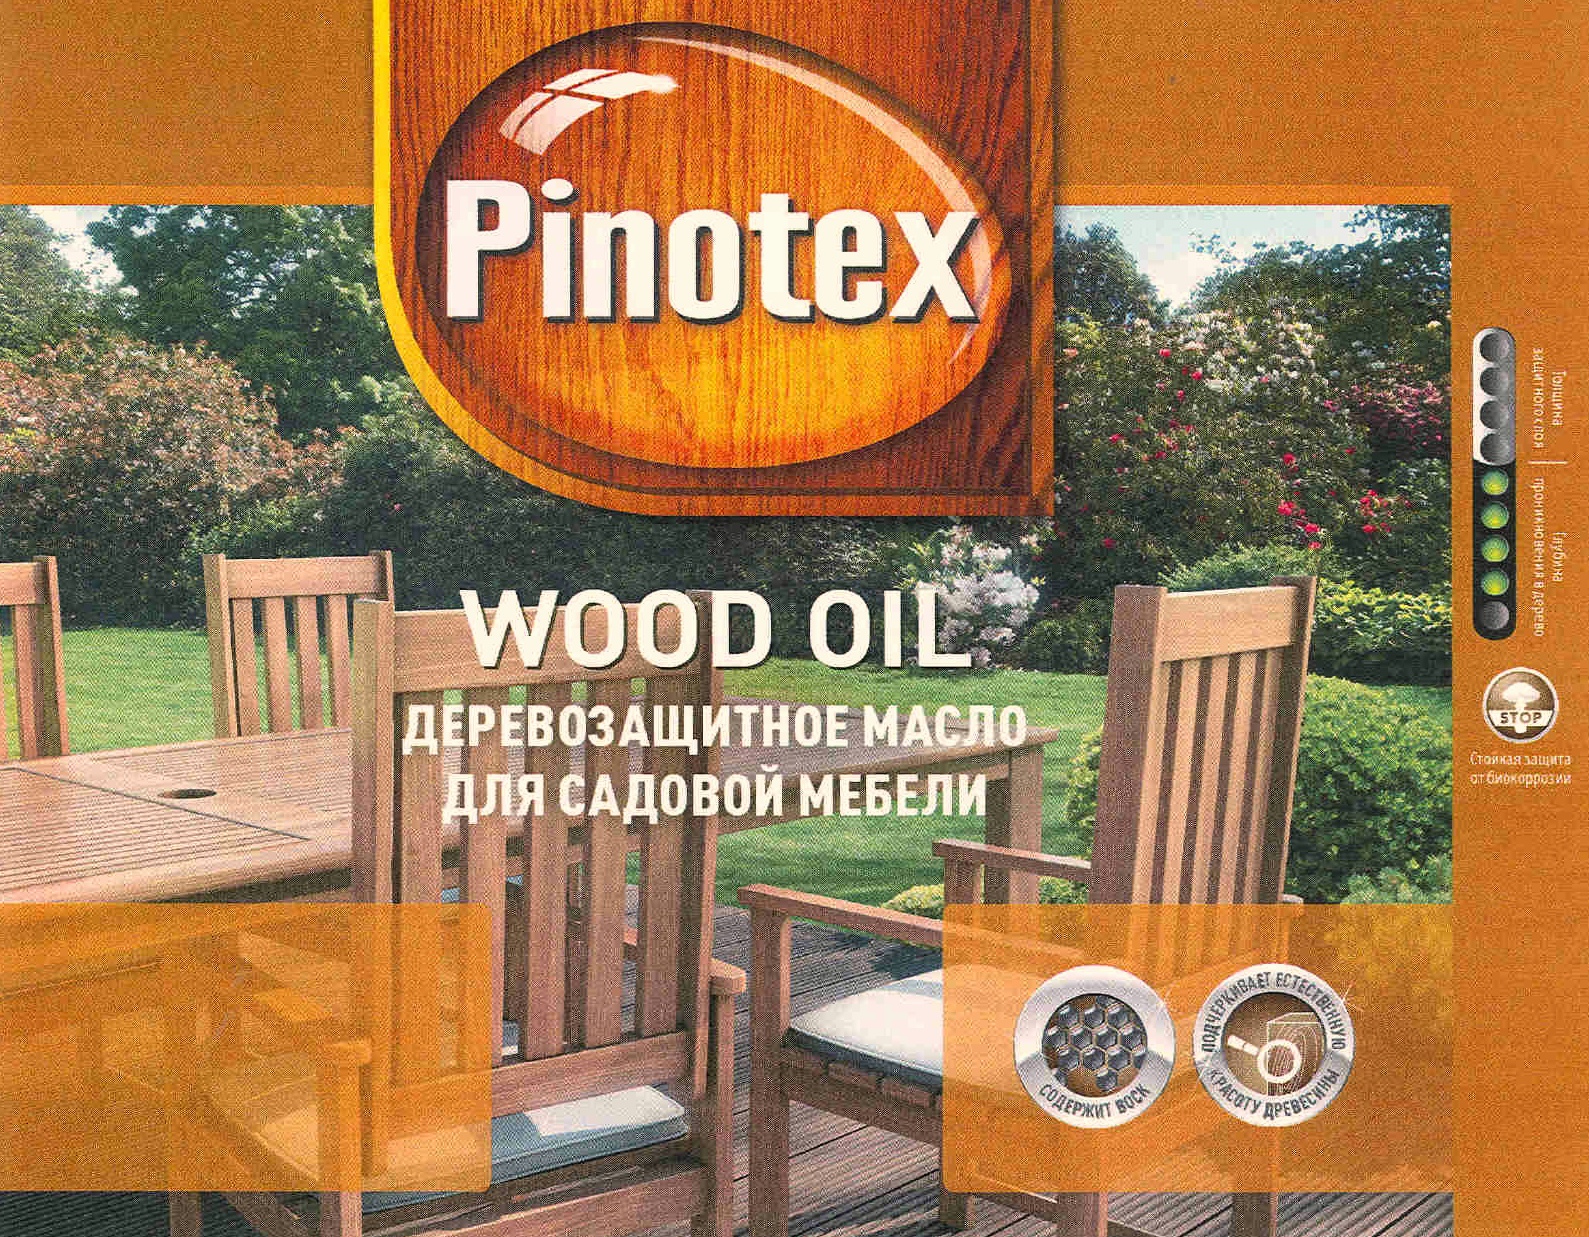 pinotex для садовой мебели